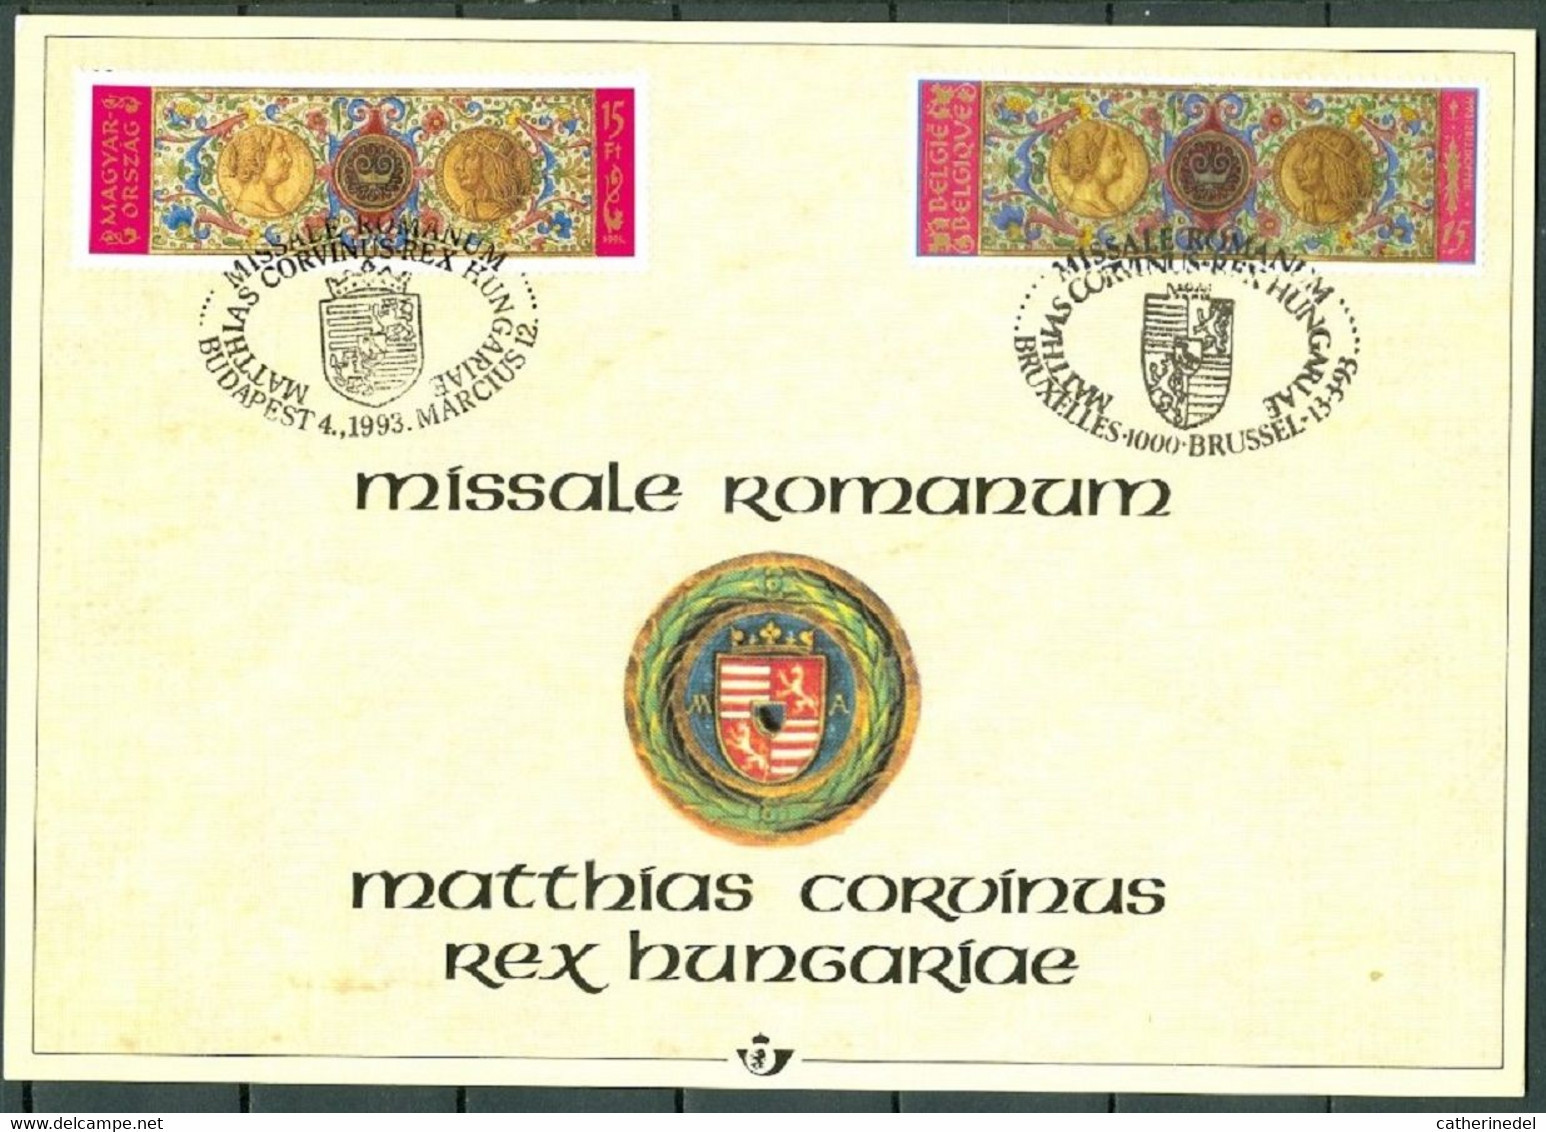 Année 1993 : Carte Souvenir 2492HK - Histoire - Missale Romanum - Cartas Commemorativas - Emisiones Comunes [HK]